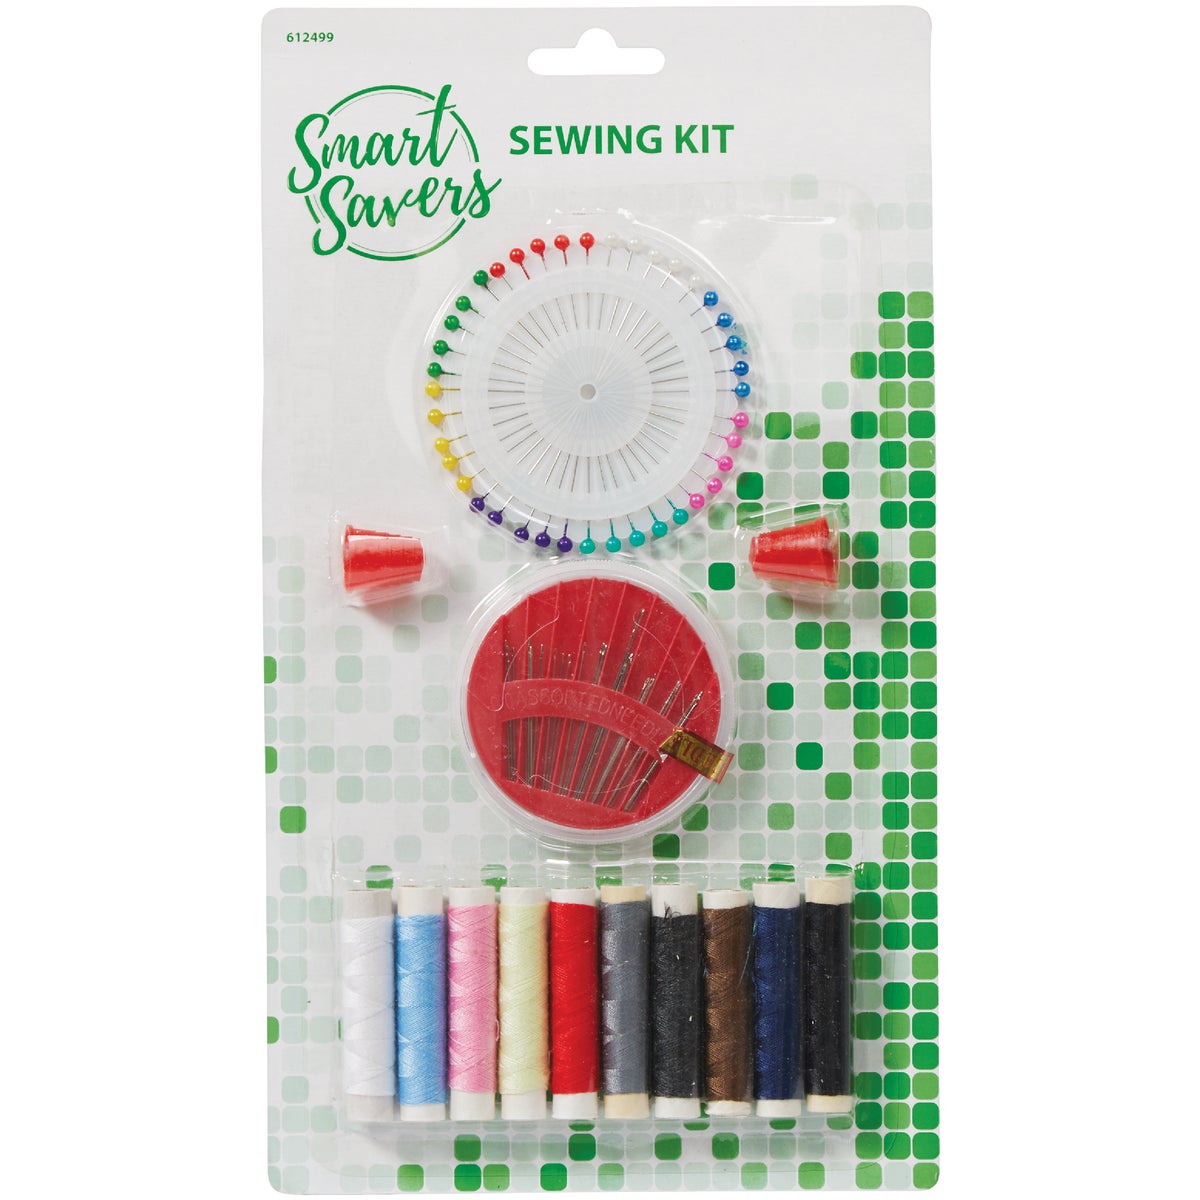 Item 612499, Smart Savers travel sewing kit